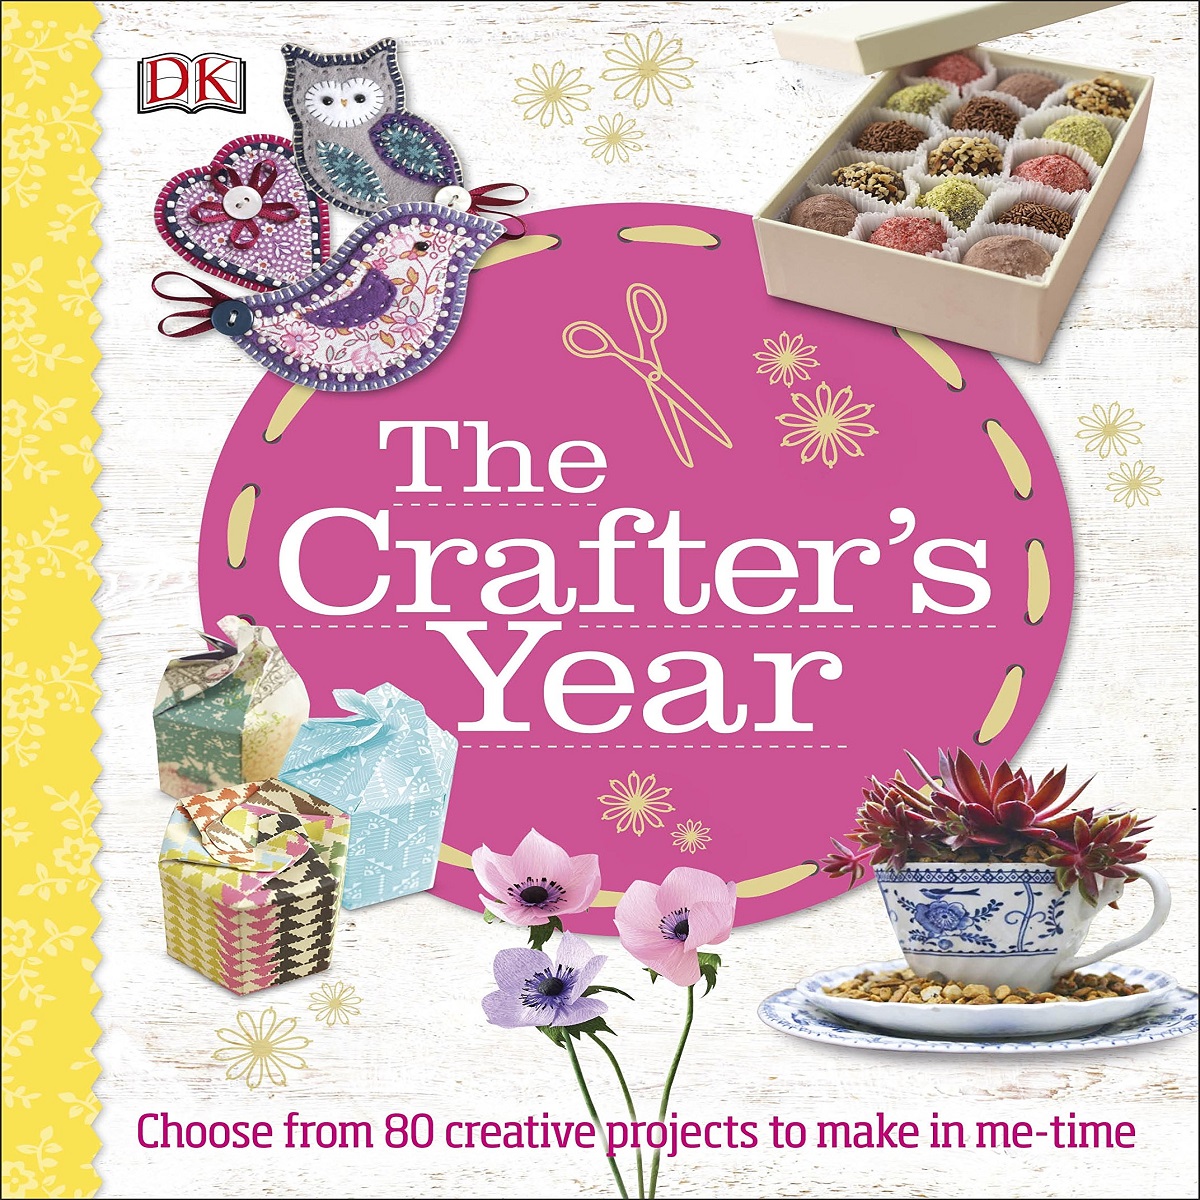 مجله The Crafters Year Hardcover فوریه 2016